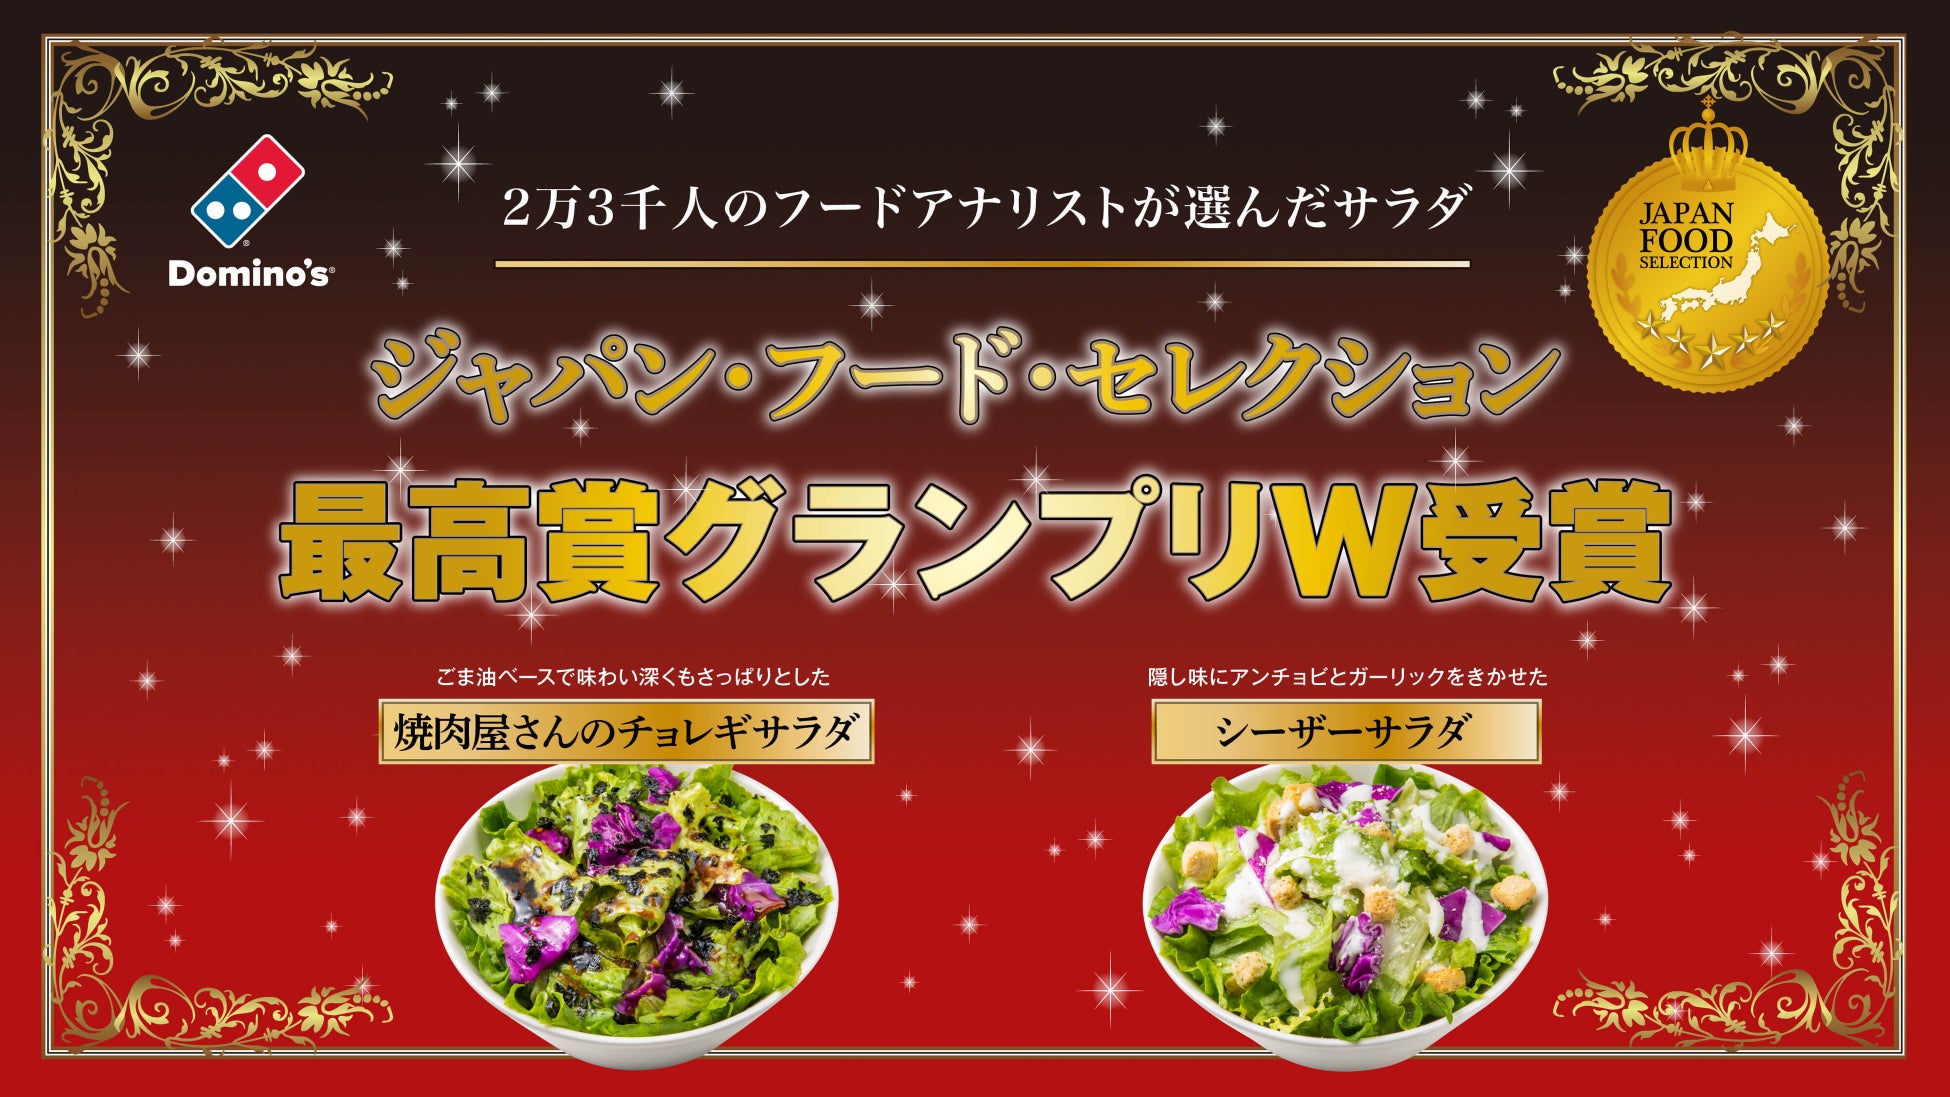 ドミノ・ピザの「焼肉屋さんのチョレギサラダ」と「シーザーサラダ」が第68回ジャパン・フード・セレクションで最高評価「グランプリ」をダブル受賞